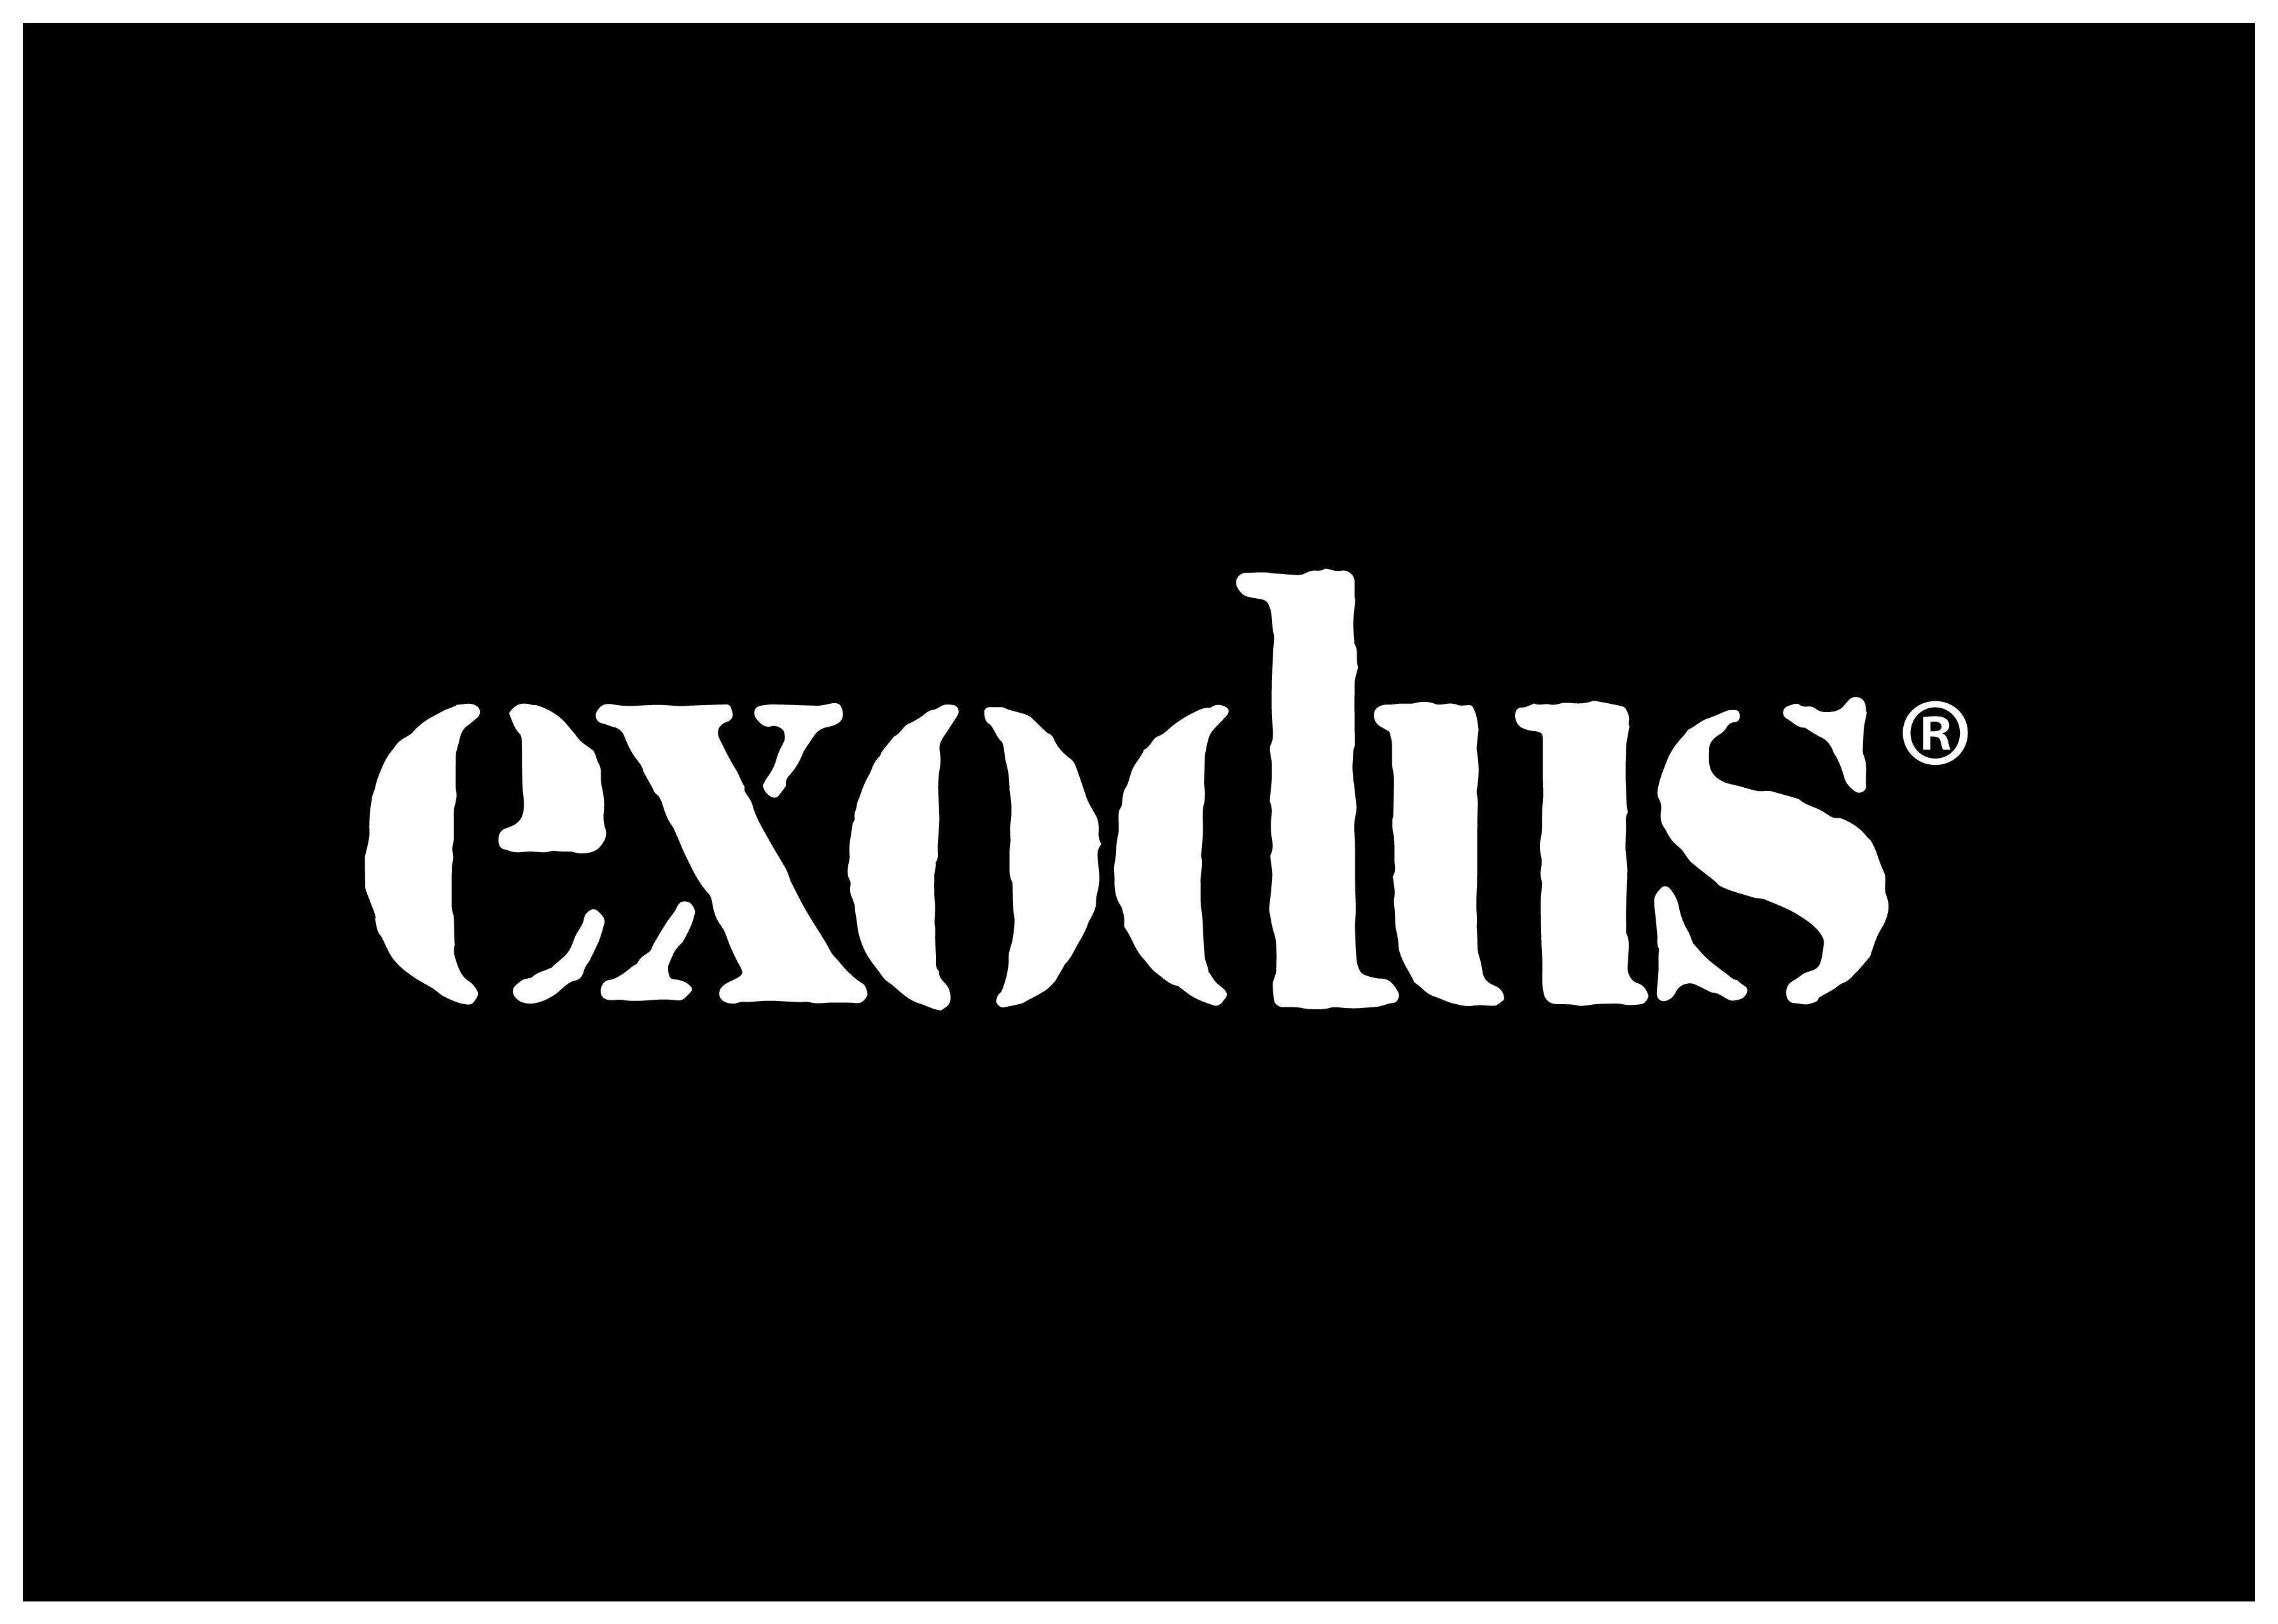 exodus